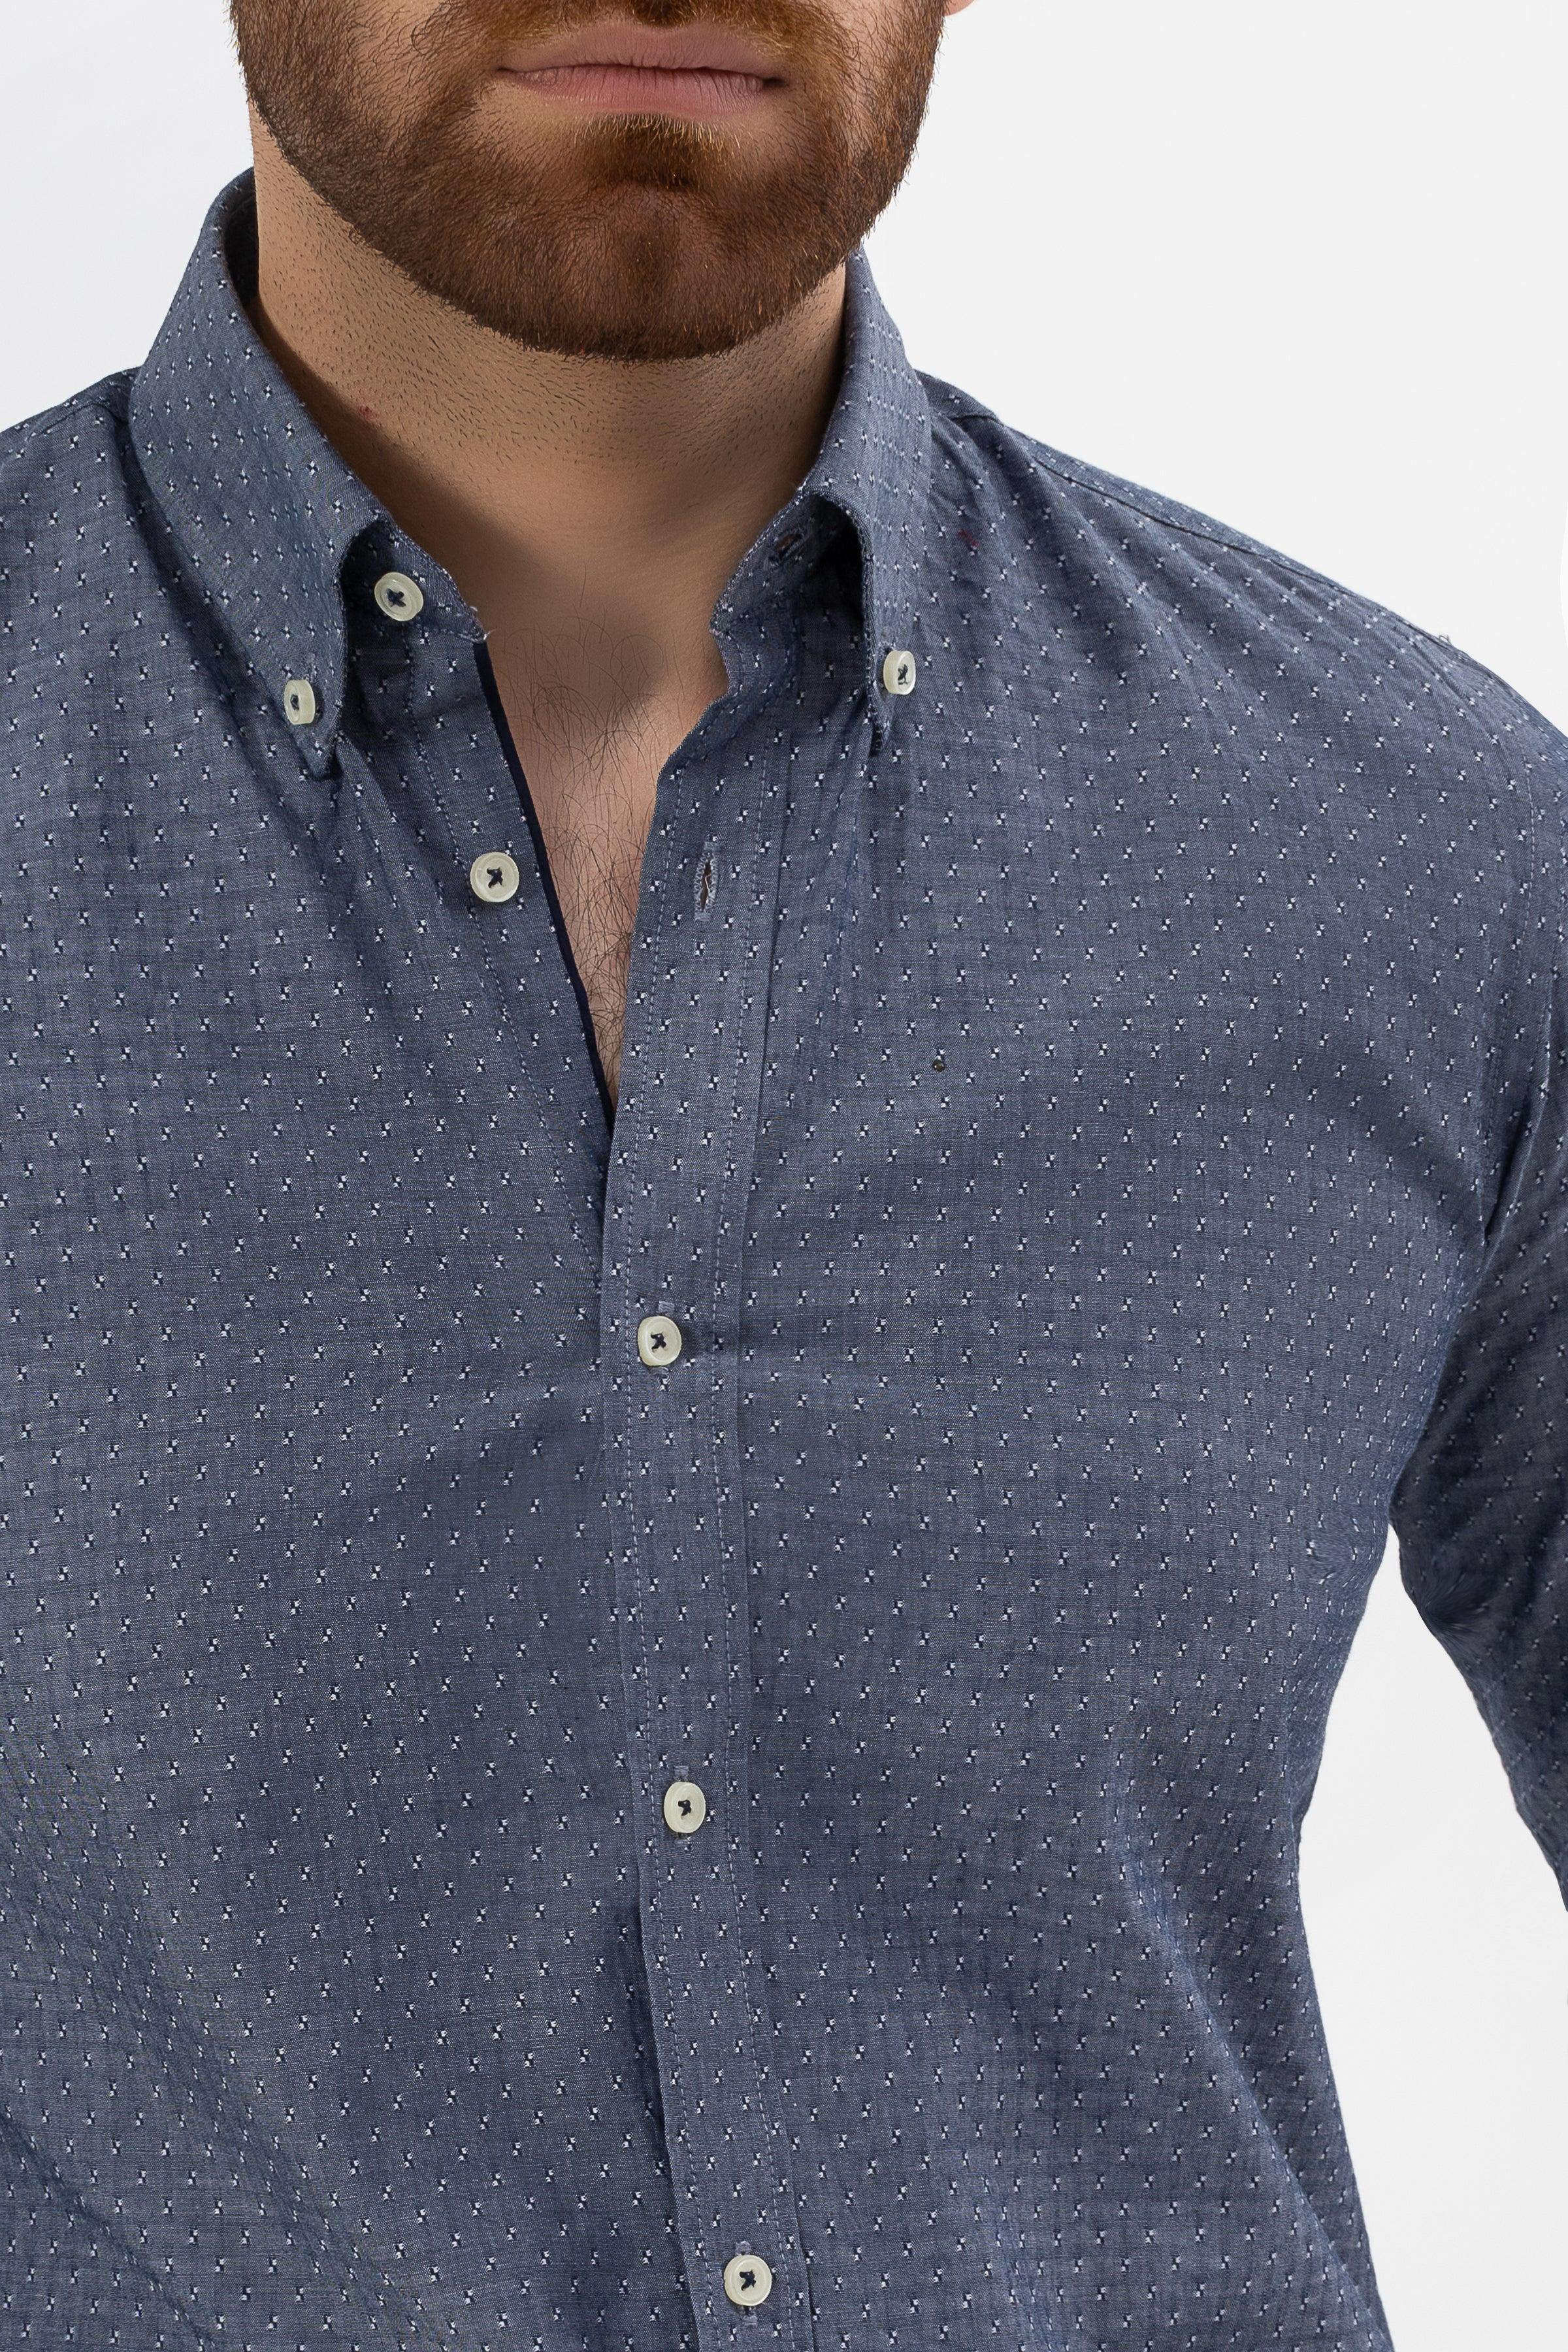 SMART SHIRT CHAMBRAY BLUE at Charcoal Clothing